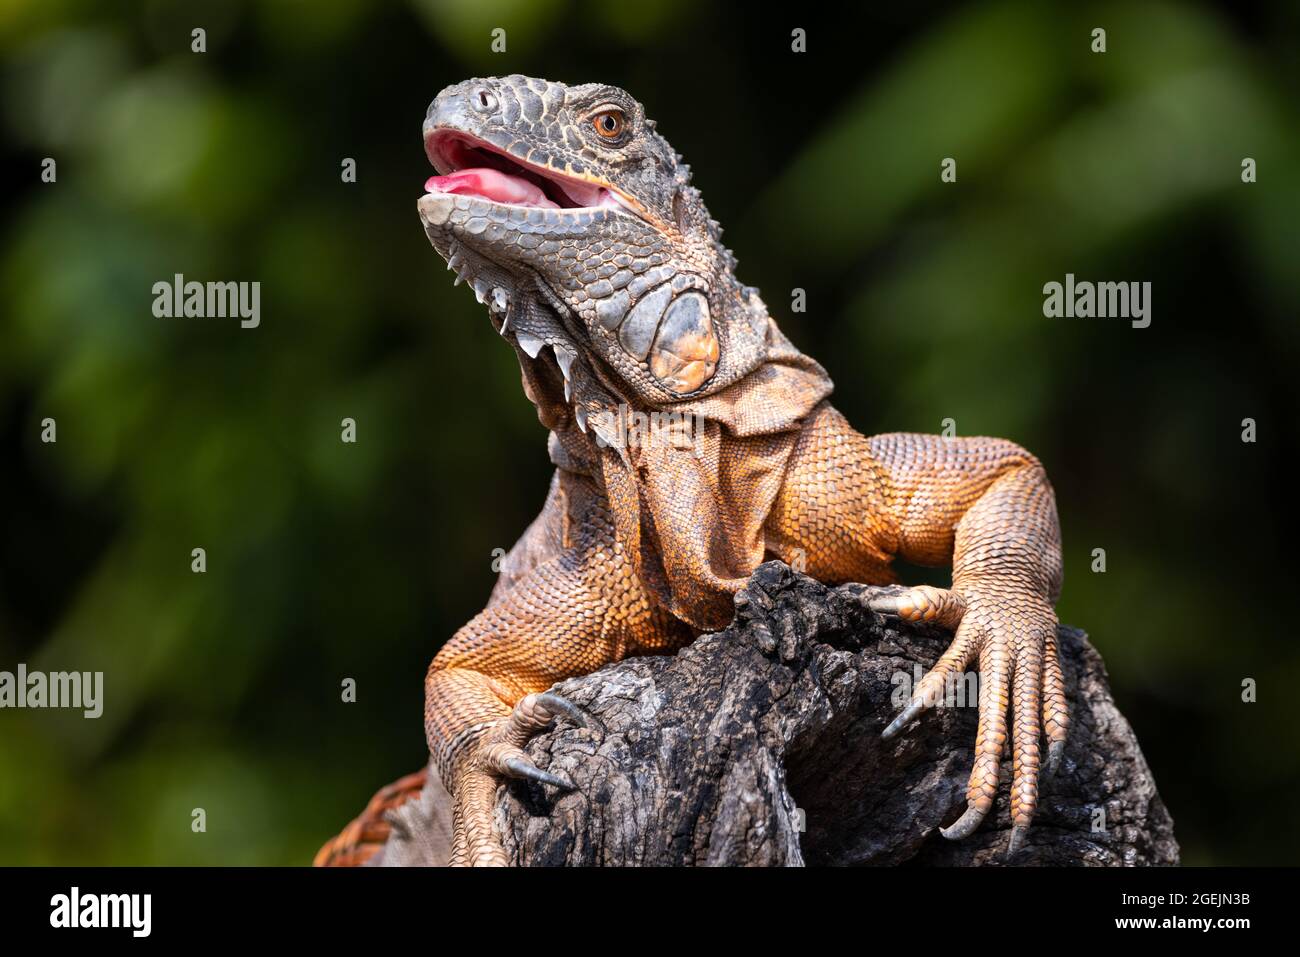 Fronte primo piano ritratto di una verde iguana con pelle arancione e la bocca aperta arrampicata su un tronco di albero Foto Stock